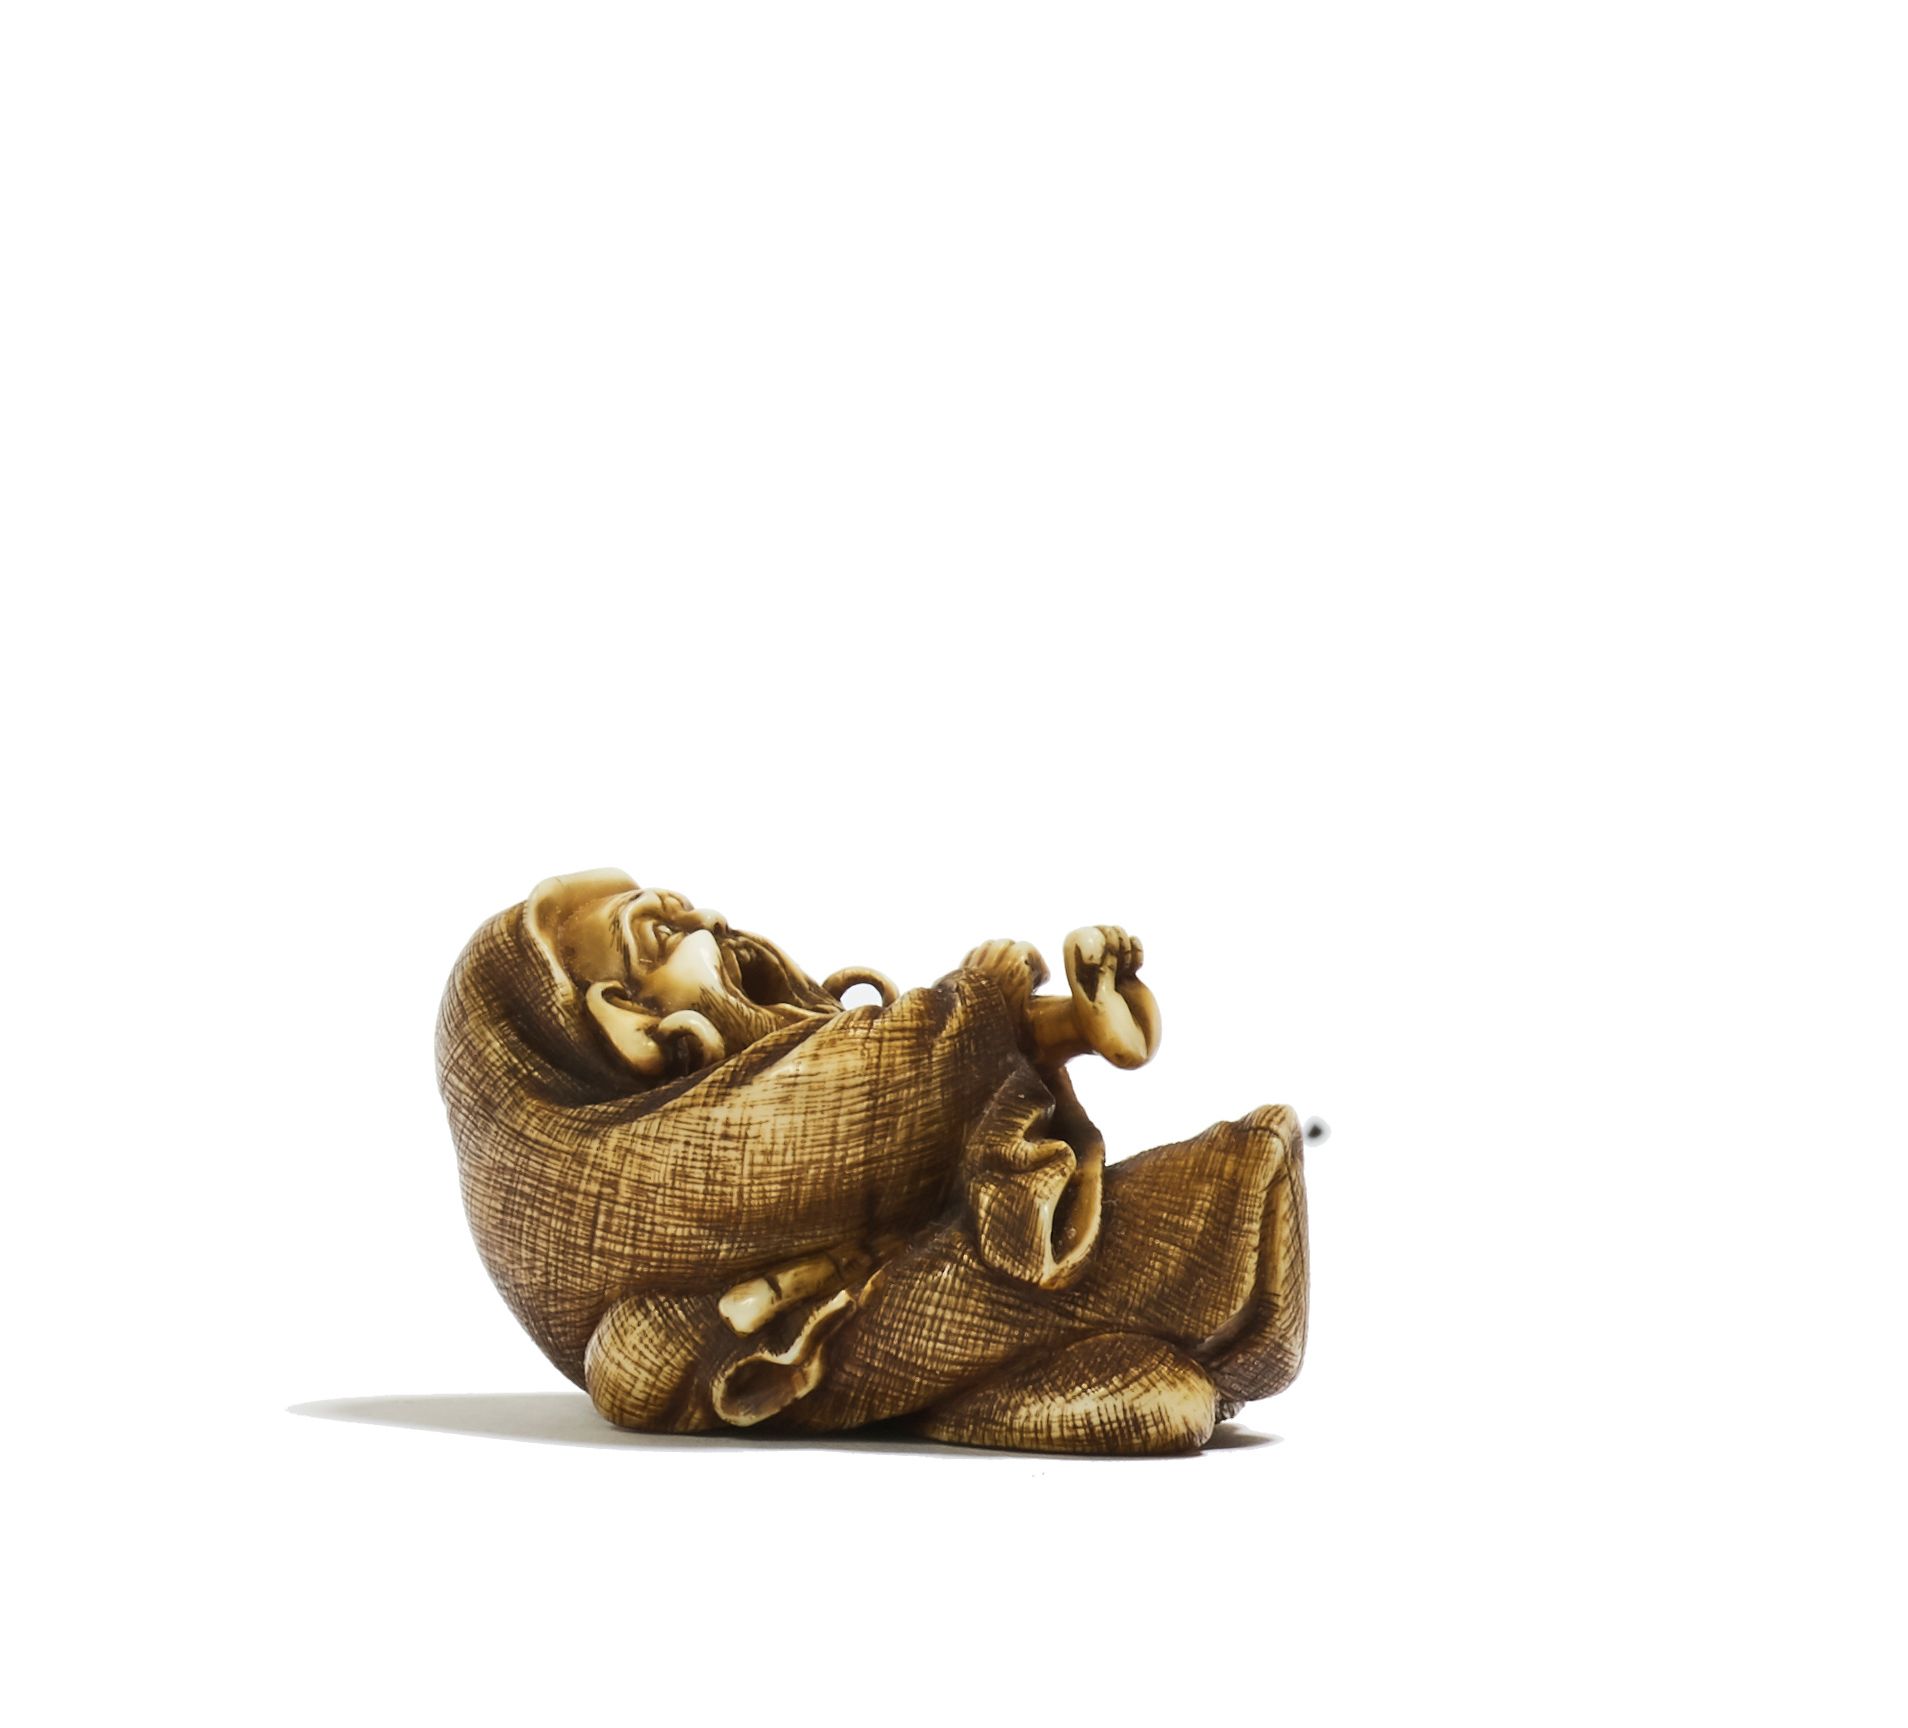 JAPON - XIXE SIÈCLE 象牙内画，达鲁马仰卧伸展，嘴巴张开，耳朵上装饰着大环，他的苍蝇拍在脚下。
长4厘米。